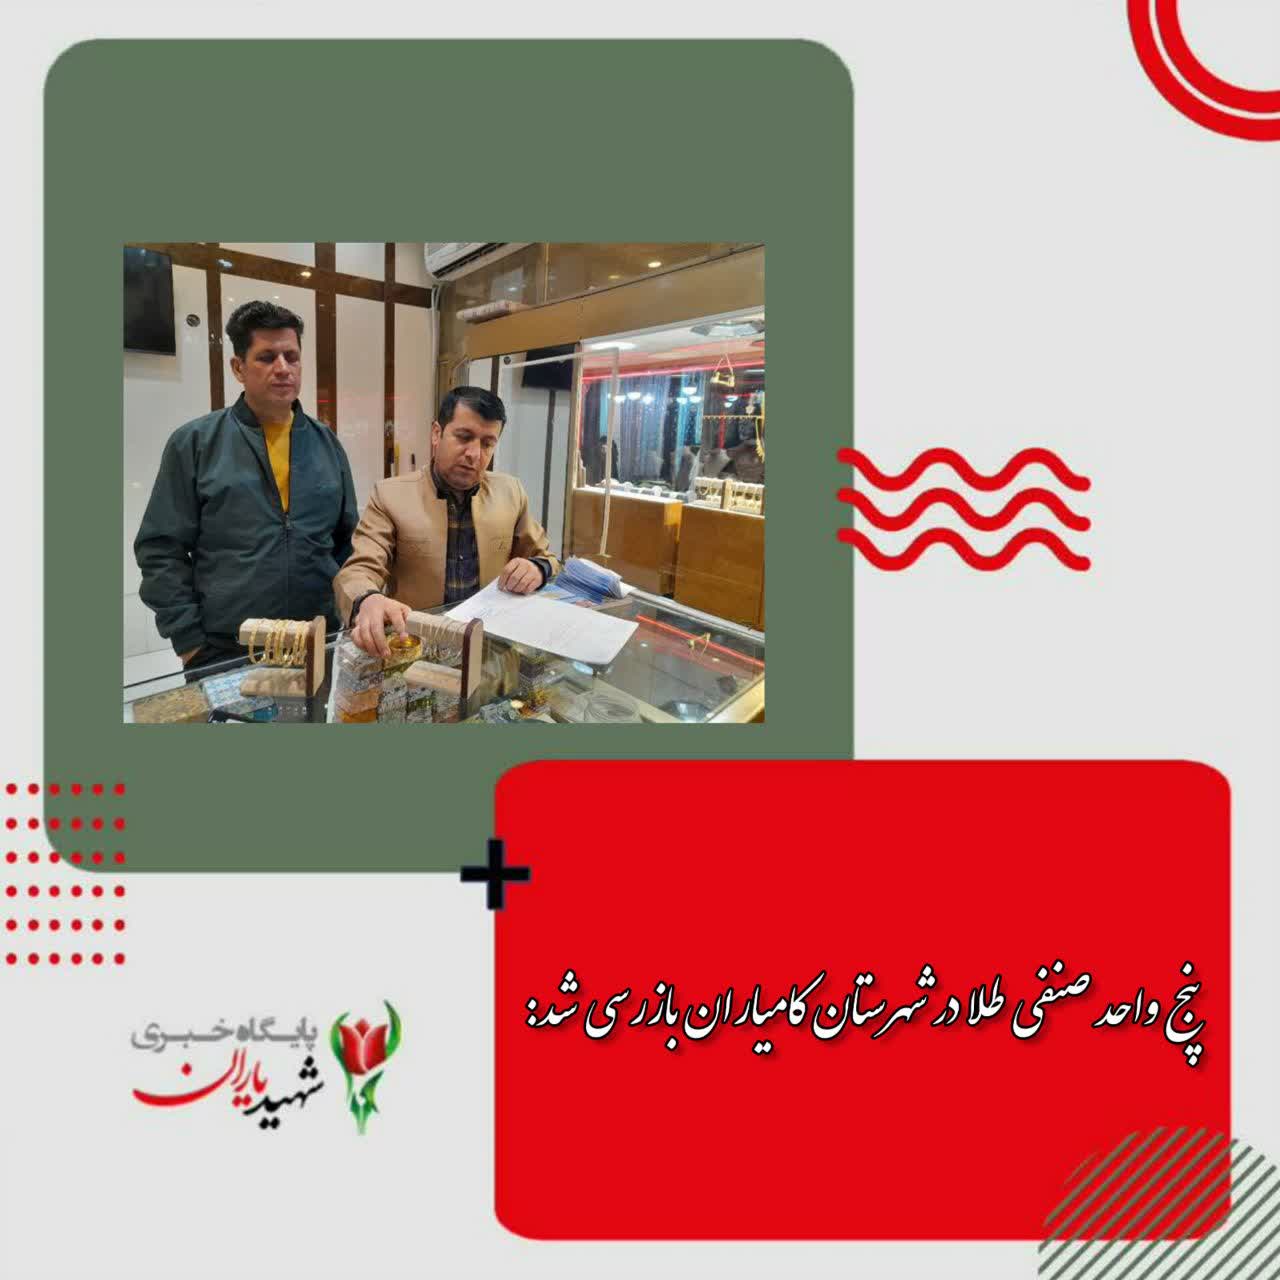 پنج واحد صنفی طلا در شهرستان کامیاران بازرسی شد: